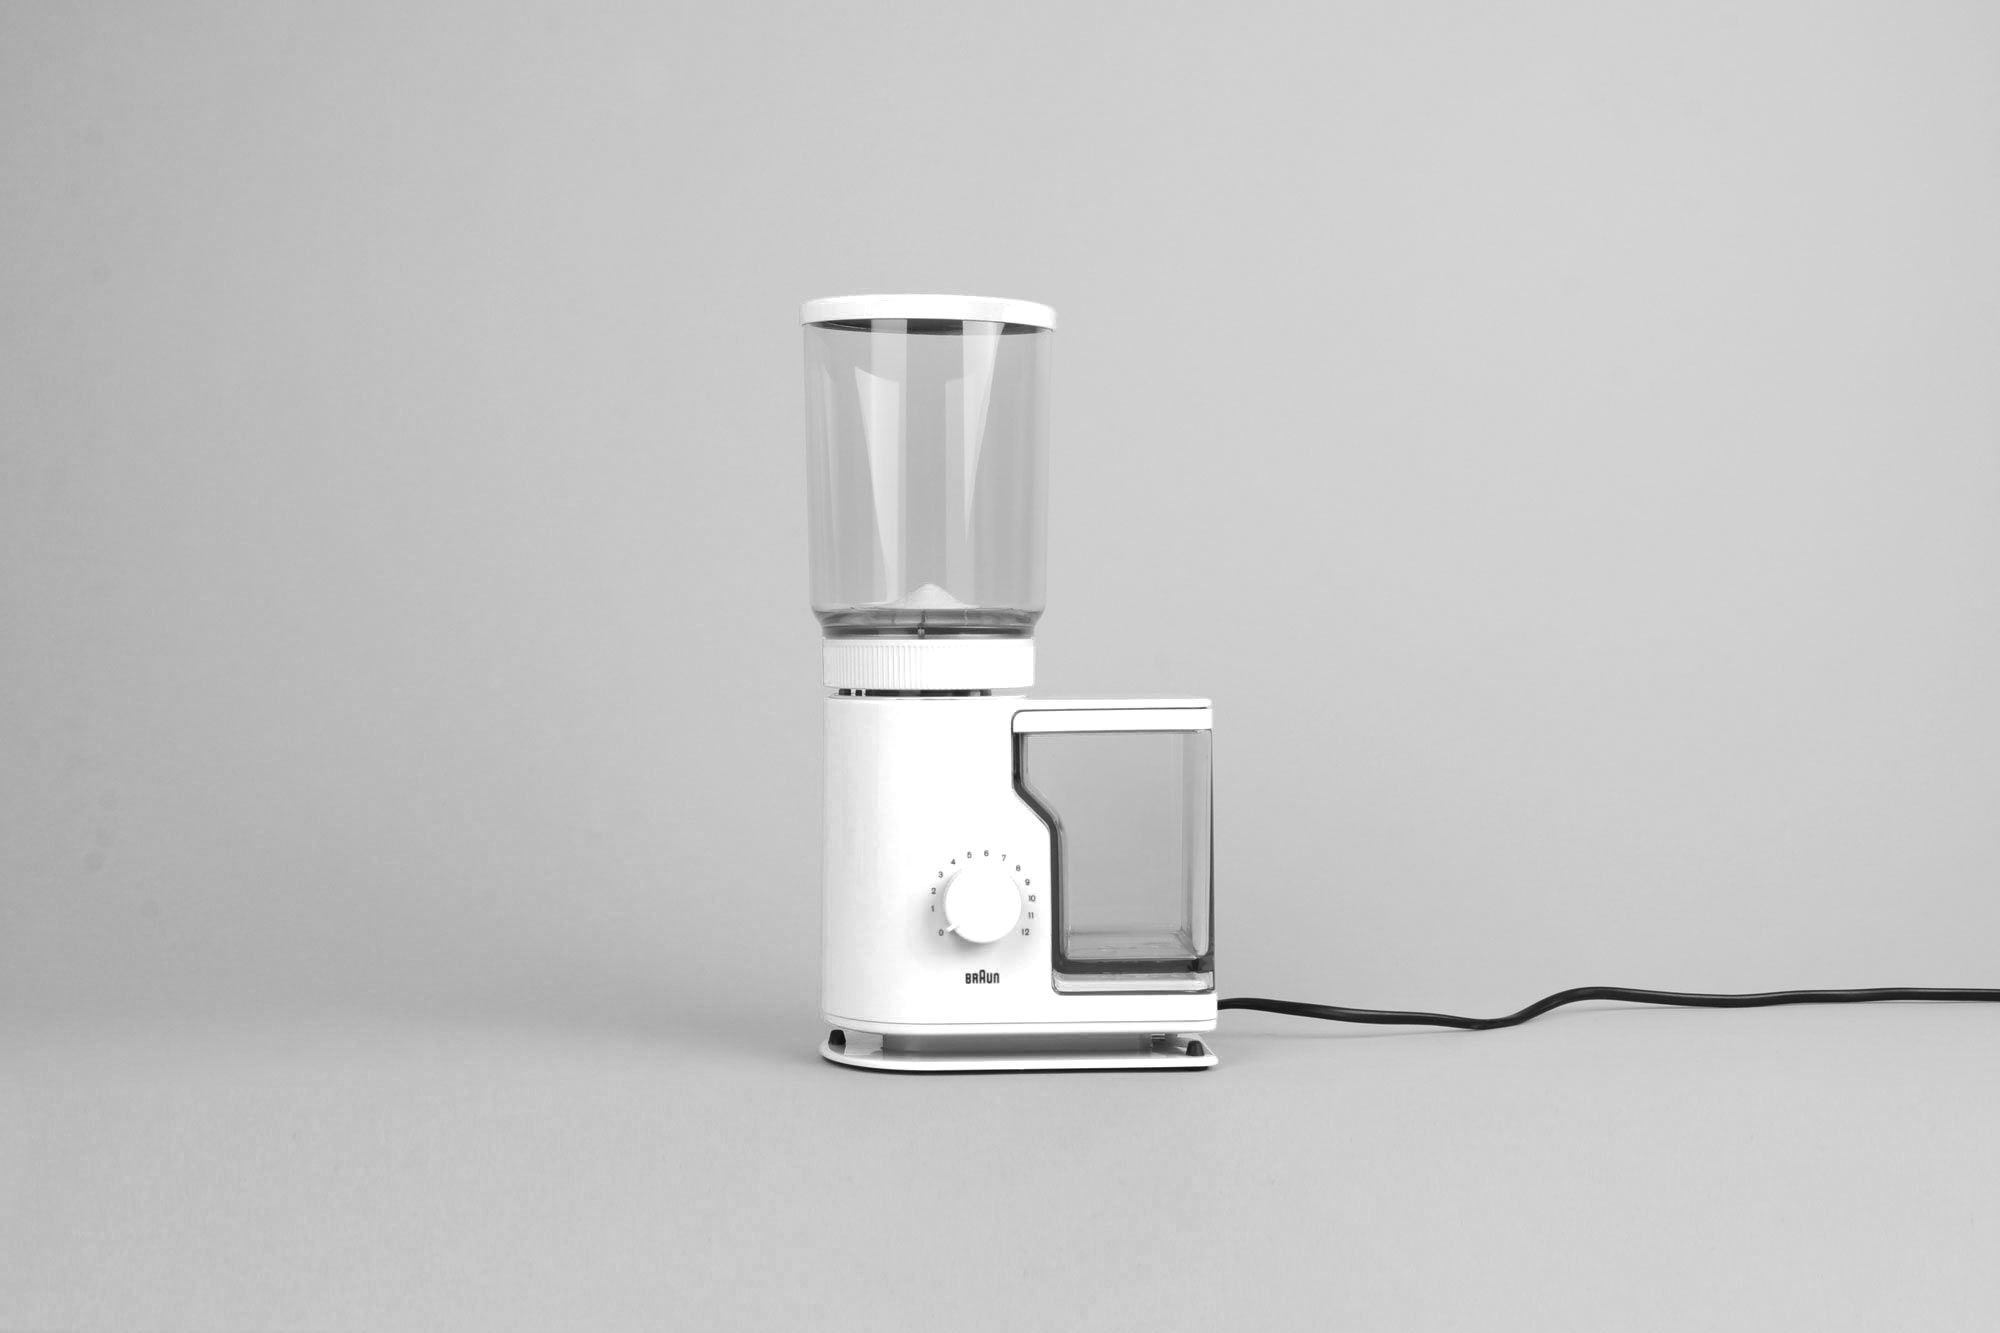 https://onlyonceshop.com/media/pages/product/braun-kmm-20-coffee-grinder-white/4c1ae422c8-1650541409/white-braun-coffee-grinder-design-kmm-20-type-4050-design-like-dieter-rams-reinhold-weiss-__1.1.jpg